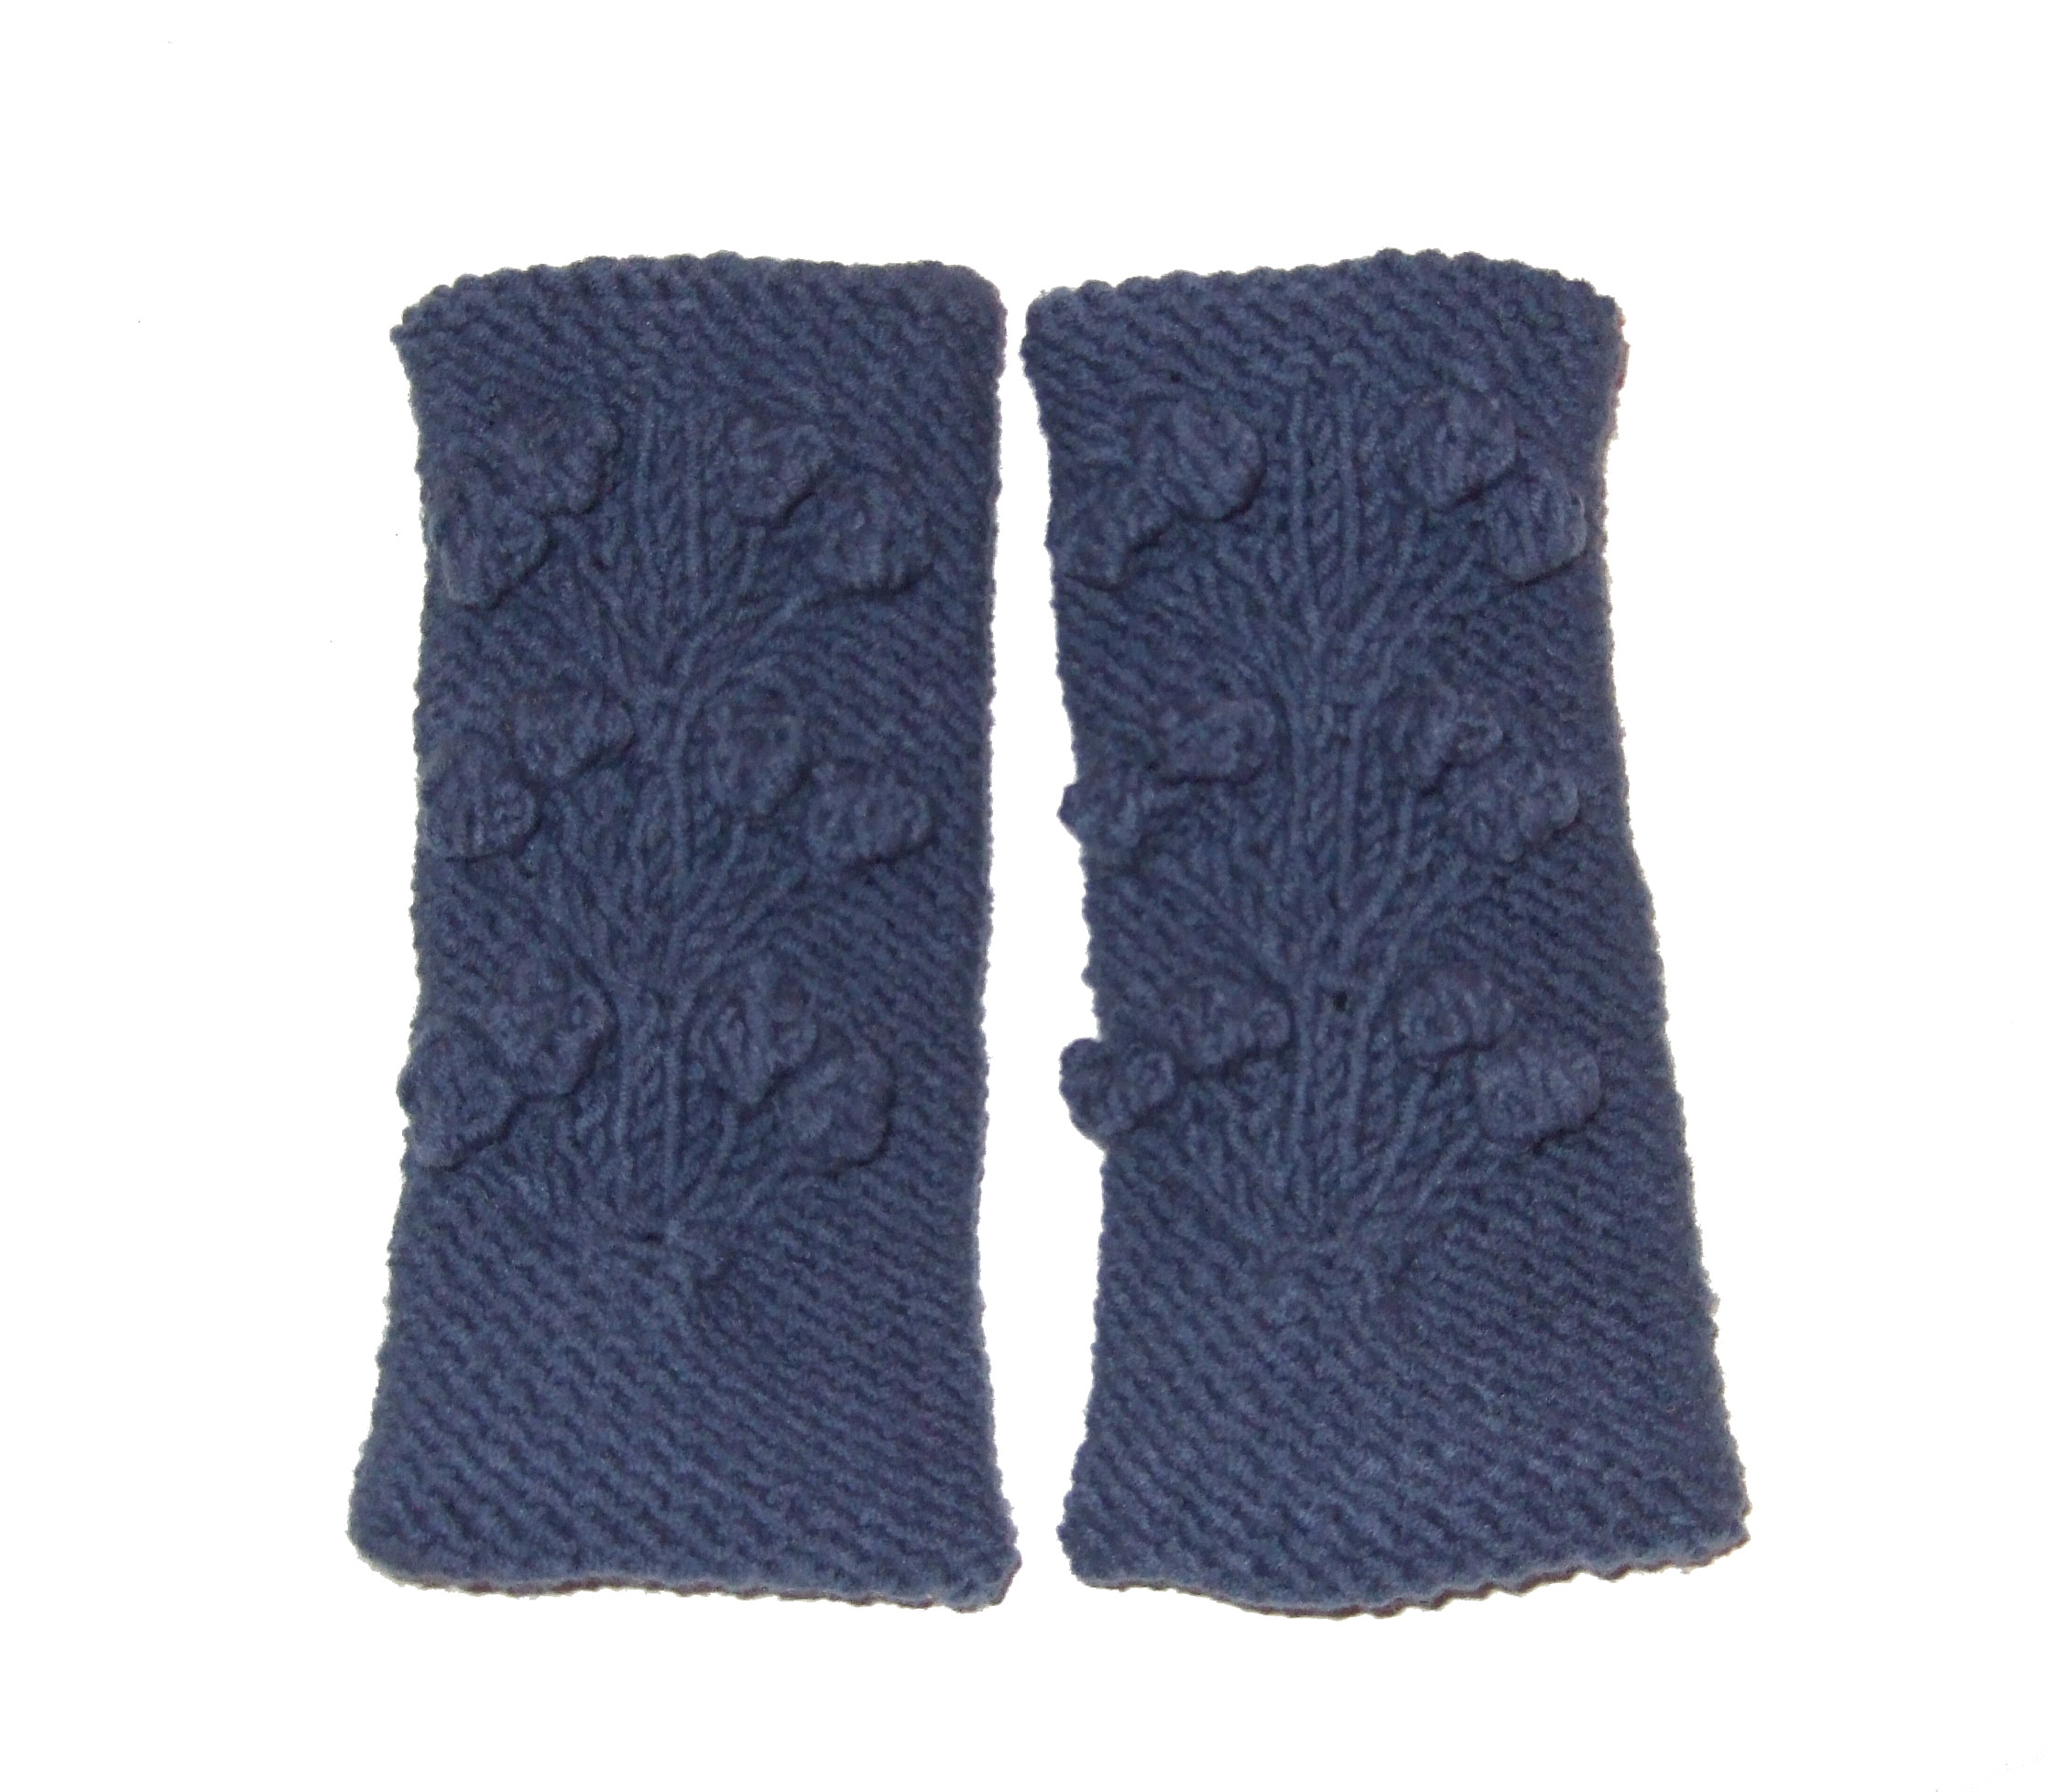 tricoter un manchon